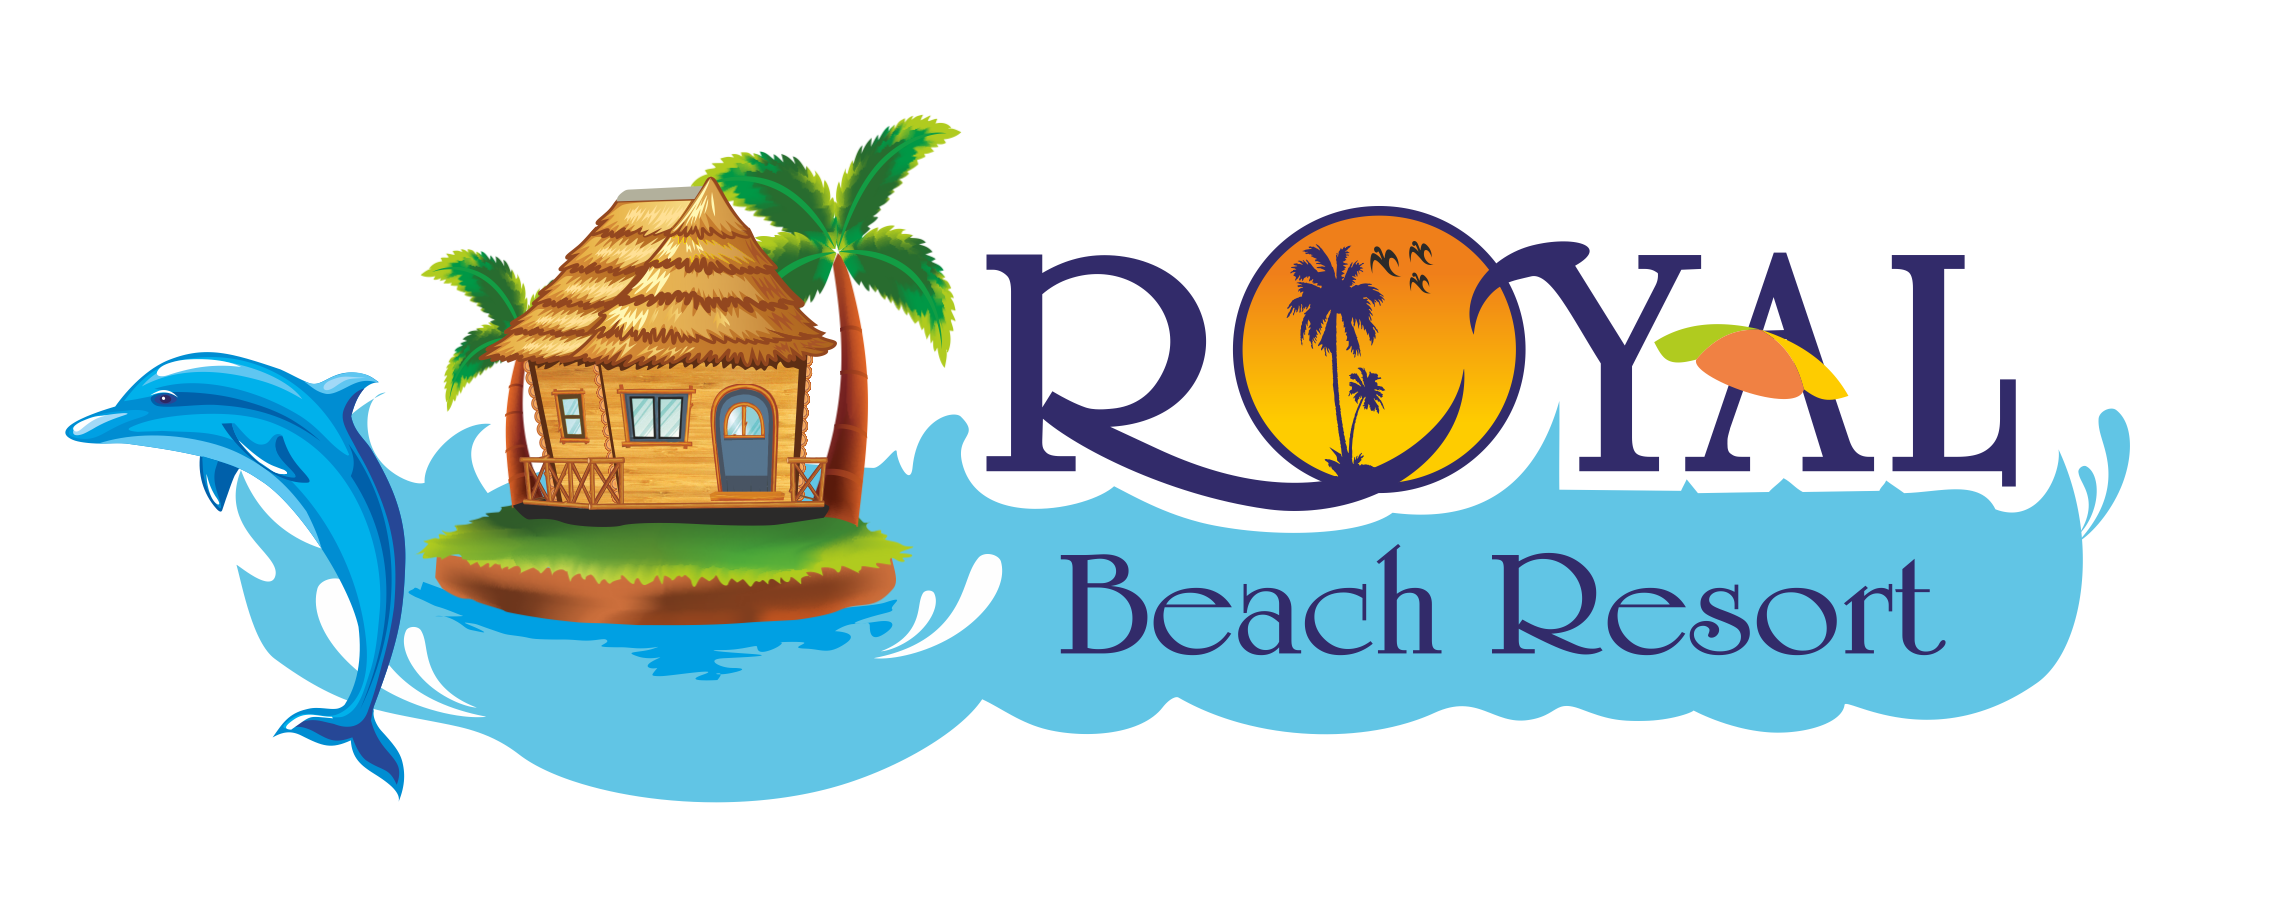 Royal beach resort diveagar SEO work